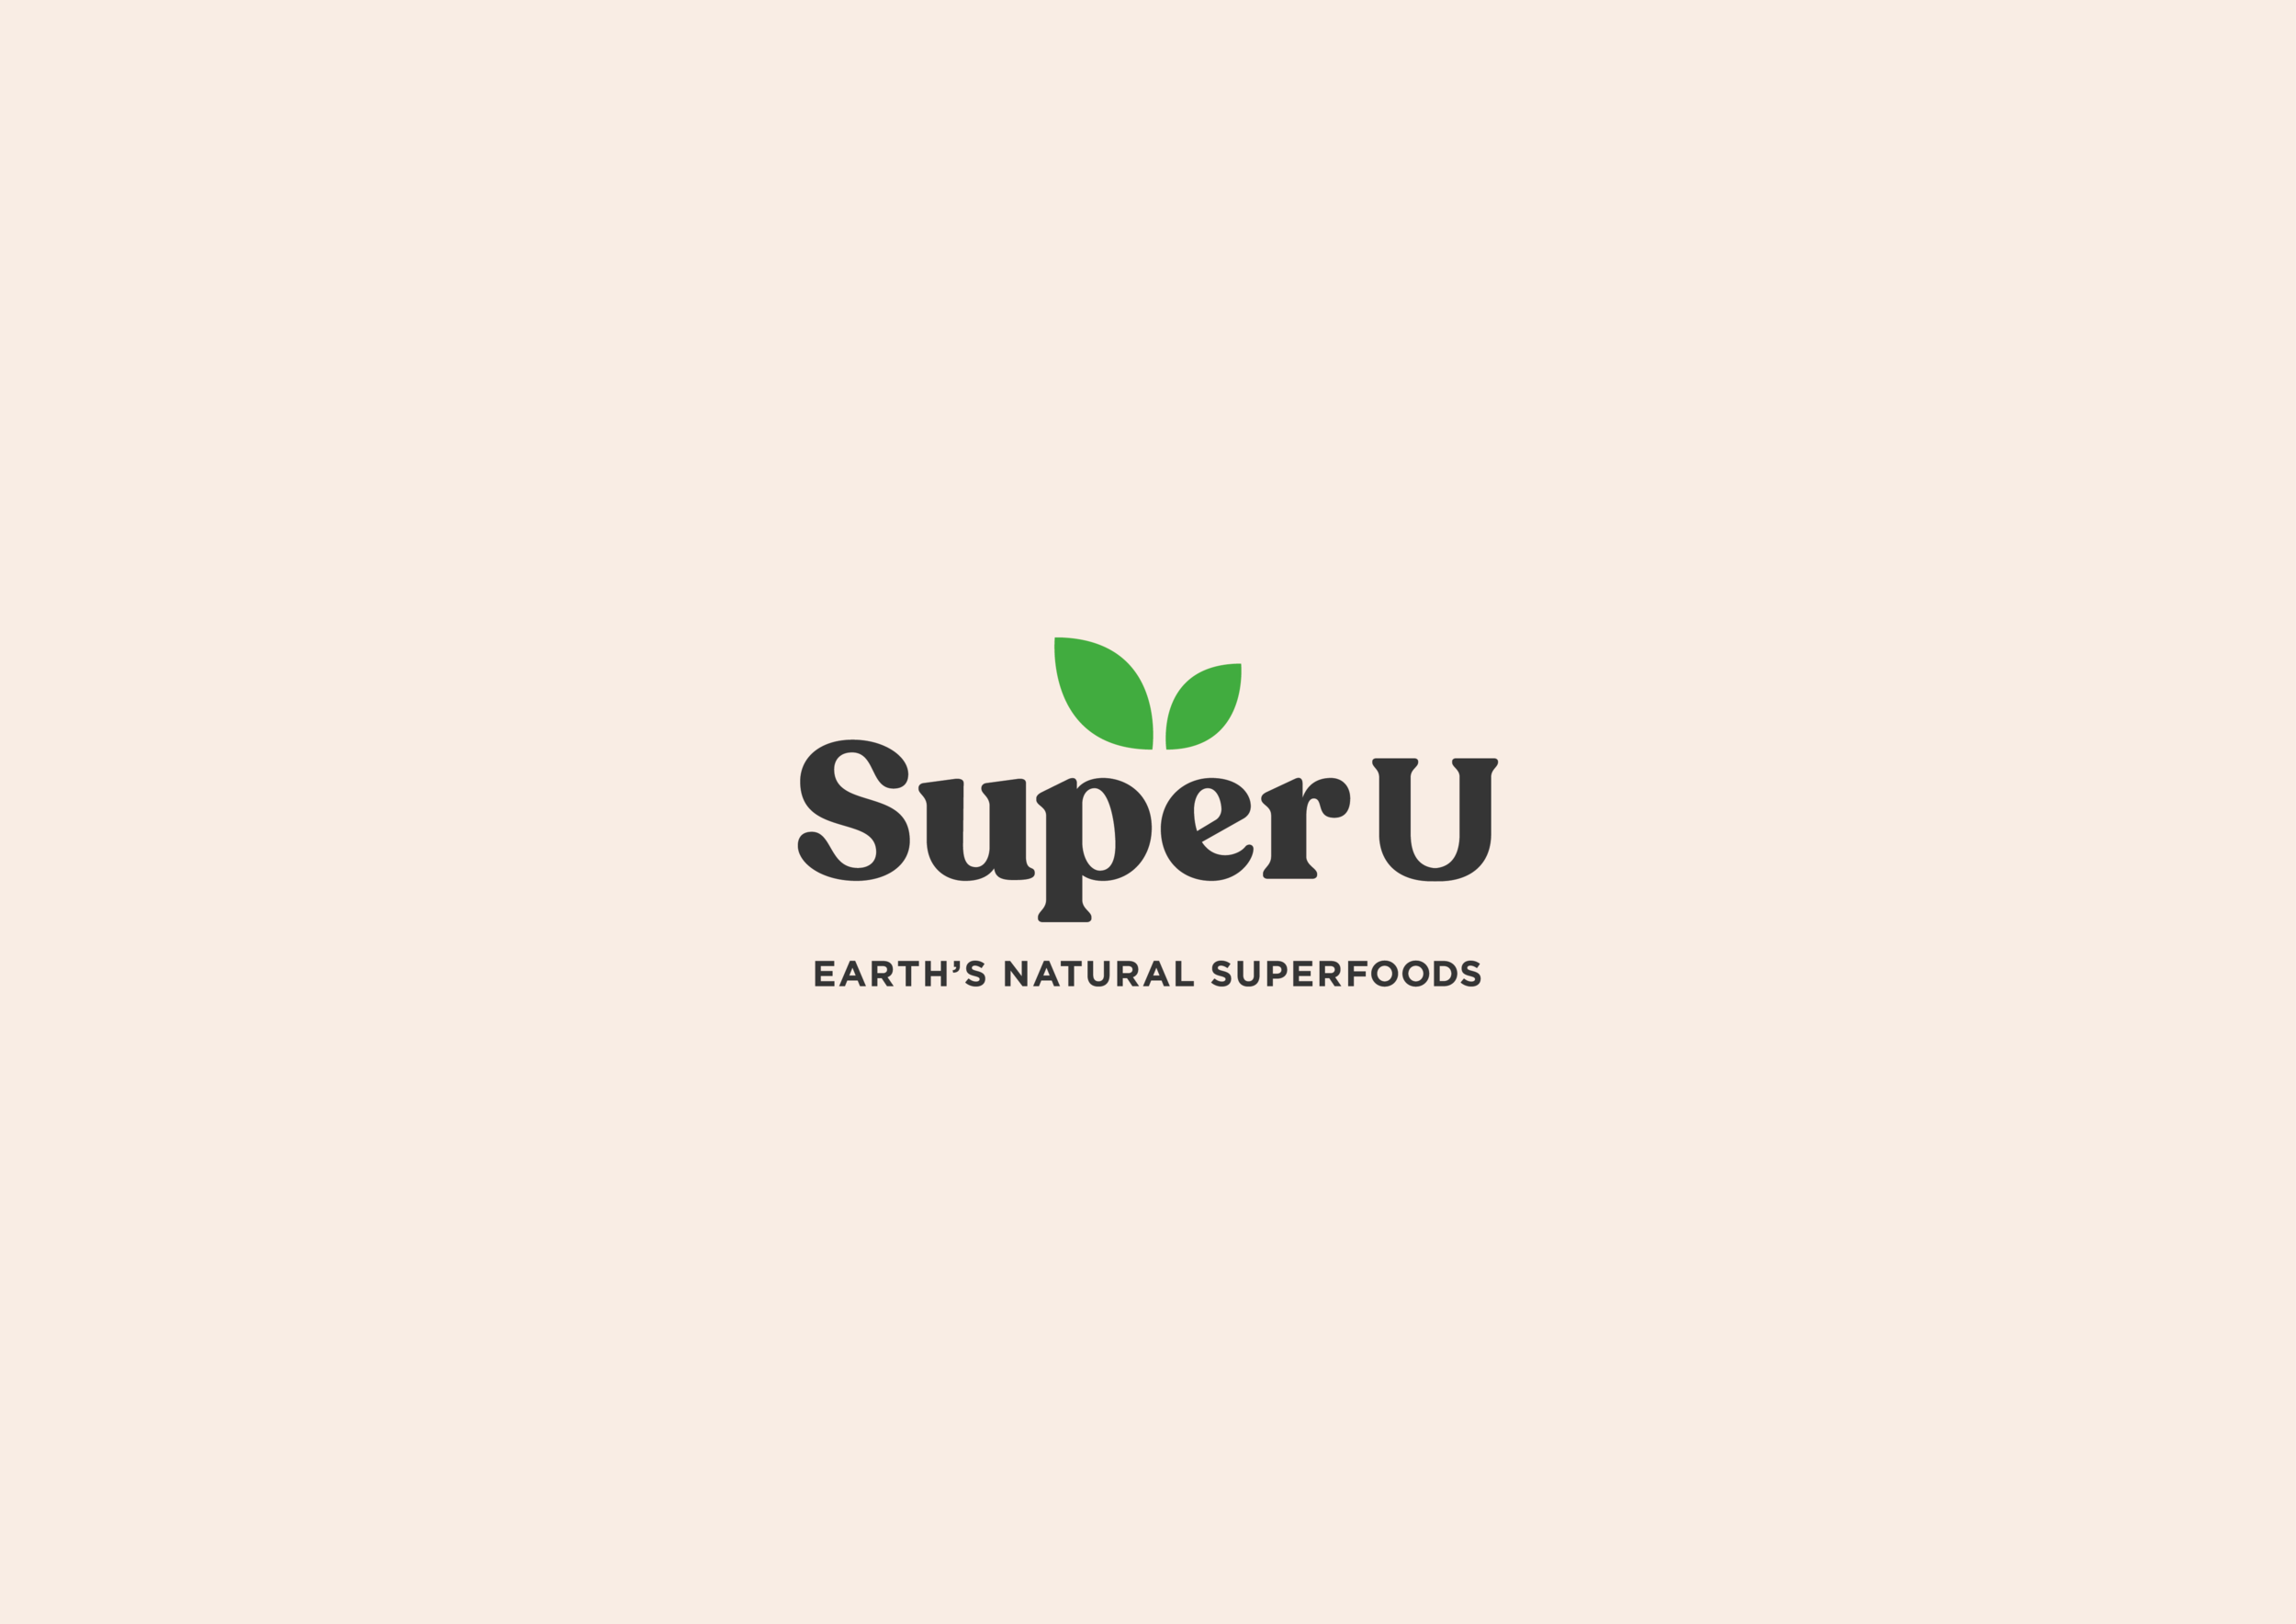 Packaging designer UK. Supplement packaging design UK. Super U brand logo with beige background